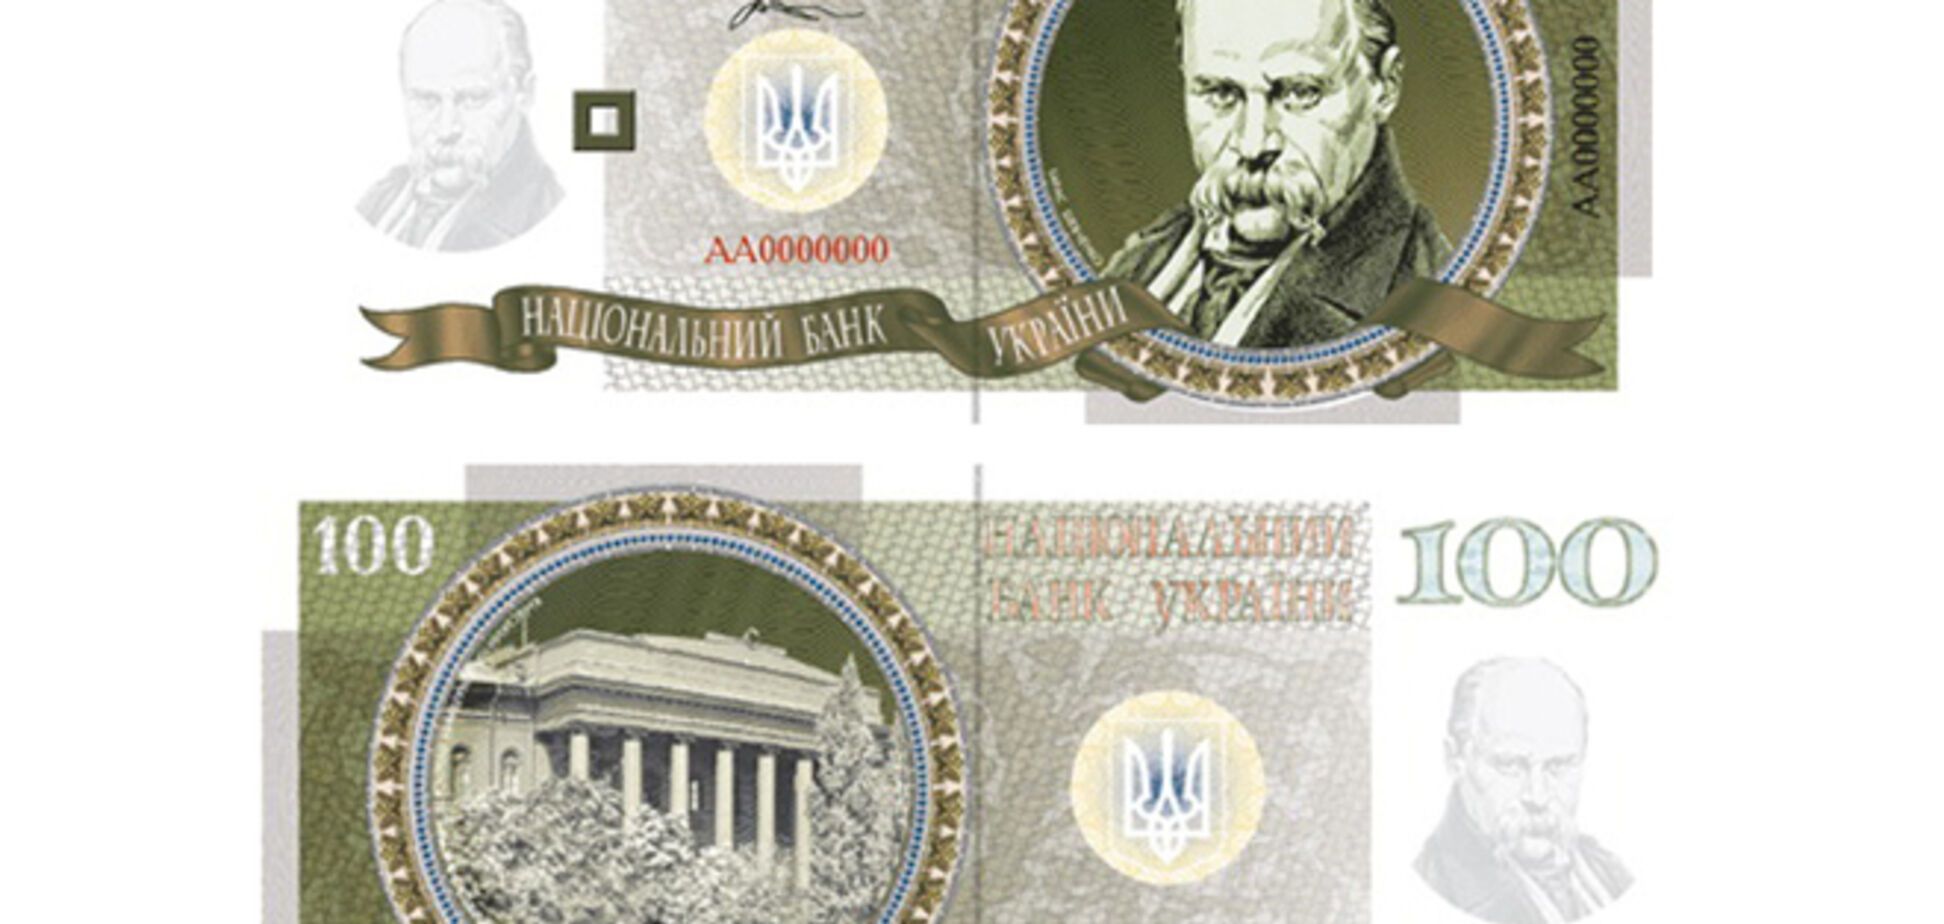 Геральдическая палата Украины представила 'новый' дизайн гривни 15 лет назад